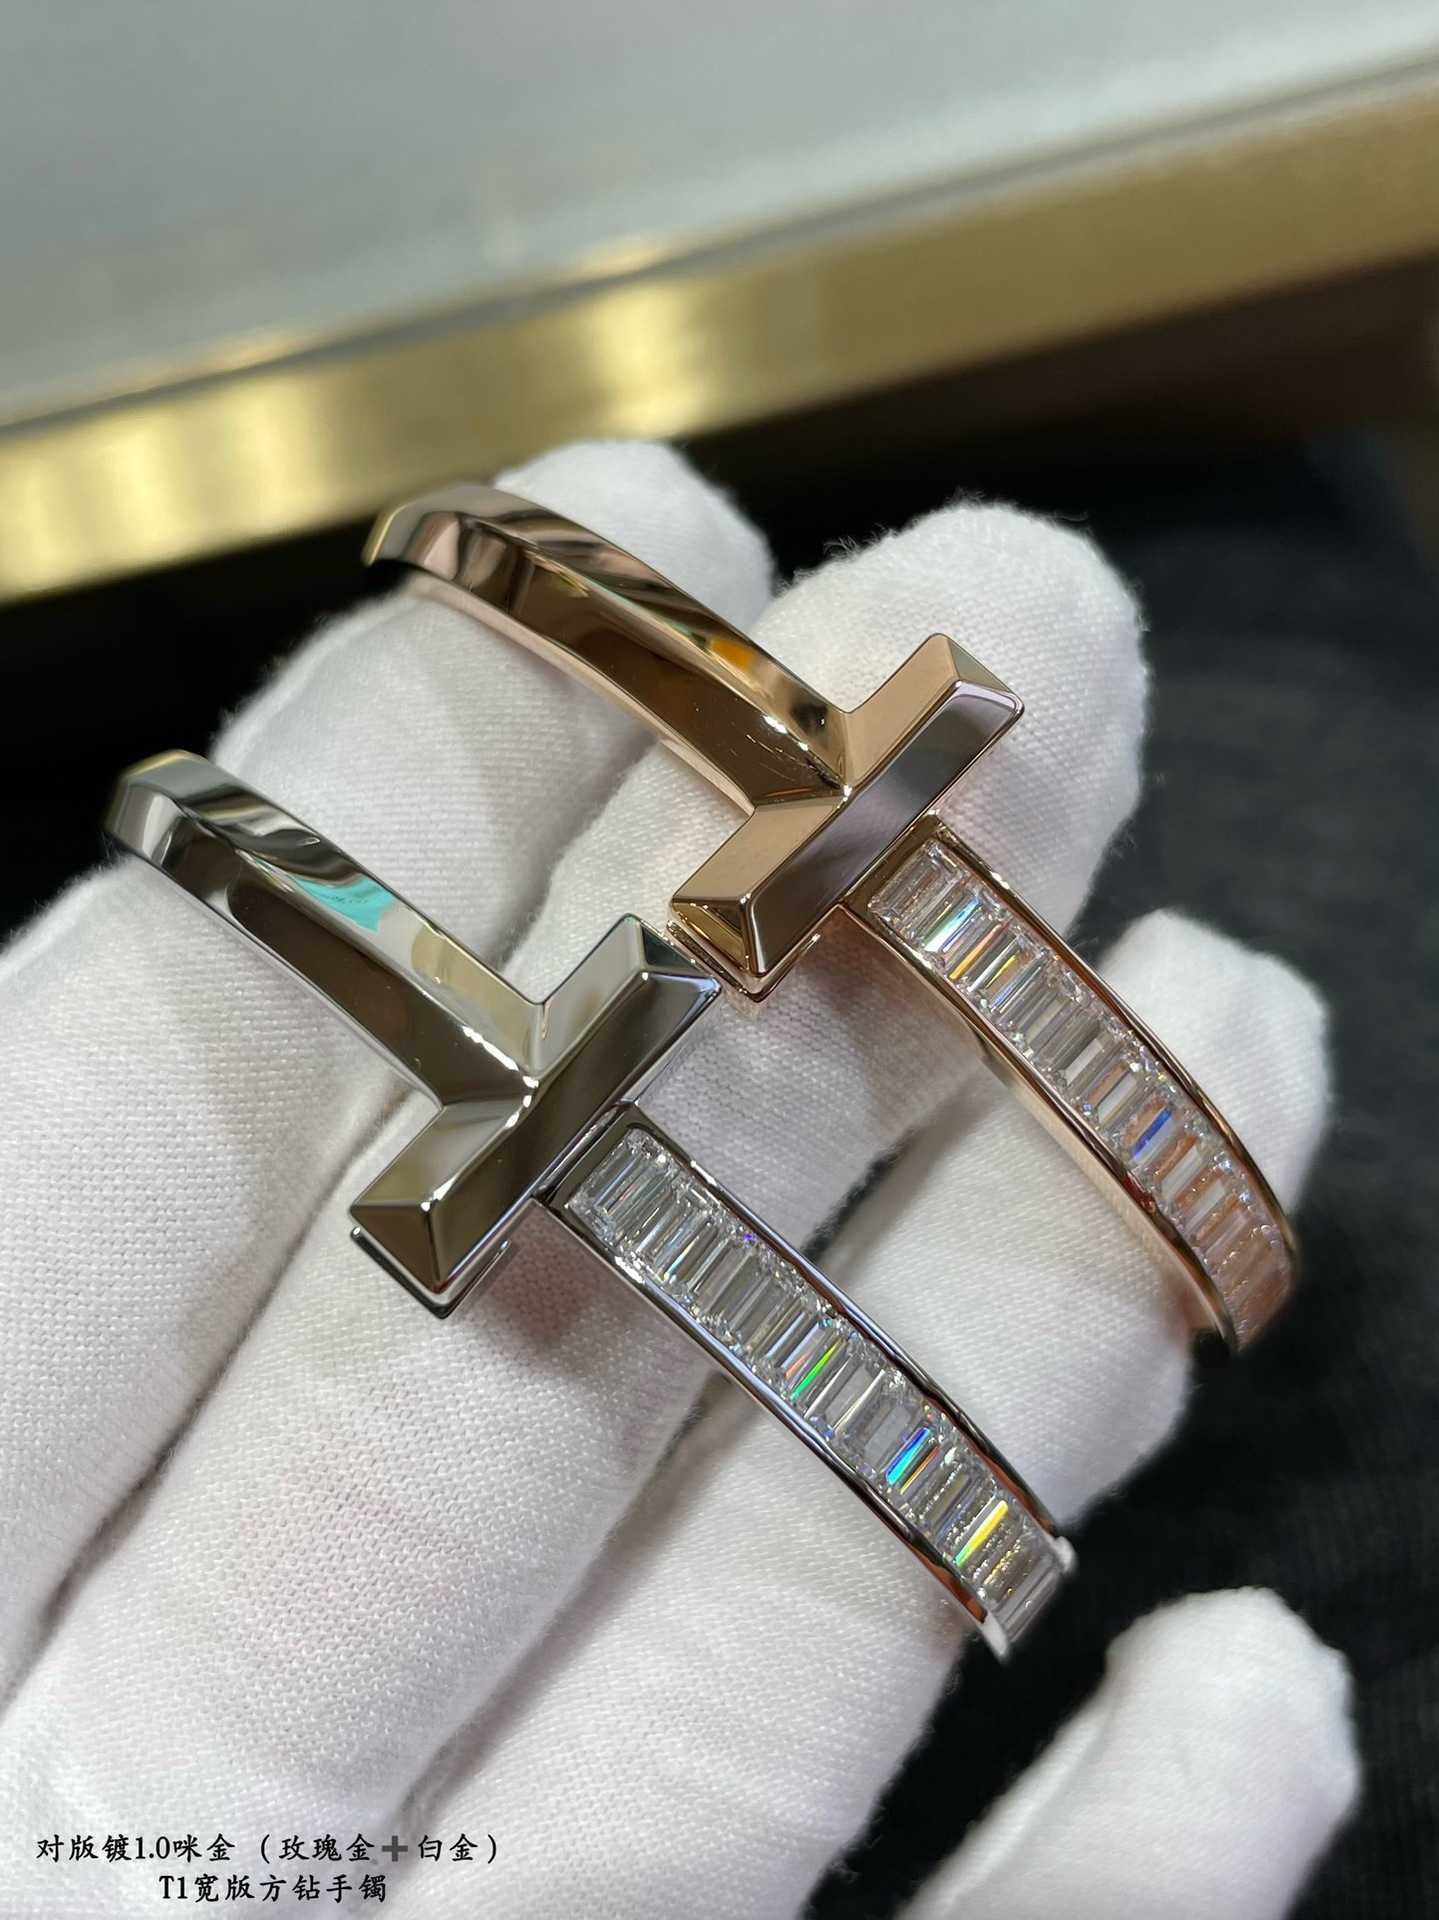 Hochwertiges V-Gold-Material, neue CNC-Präzisionsschnitzerei, hochwertiges Tiffay-Armband mit breitem, quadratischem Diamant, doppelt weiblich, mit Logo